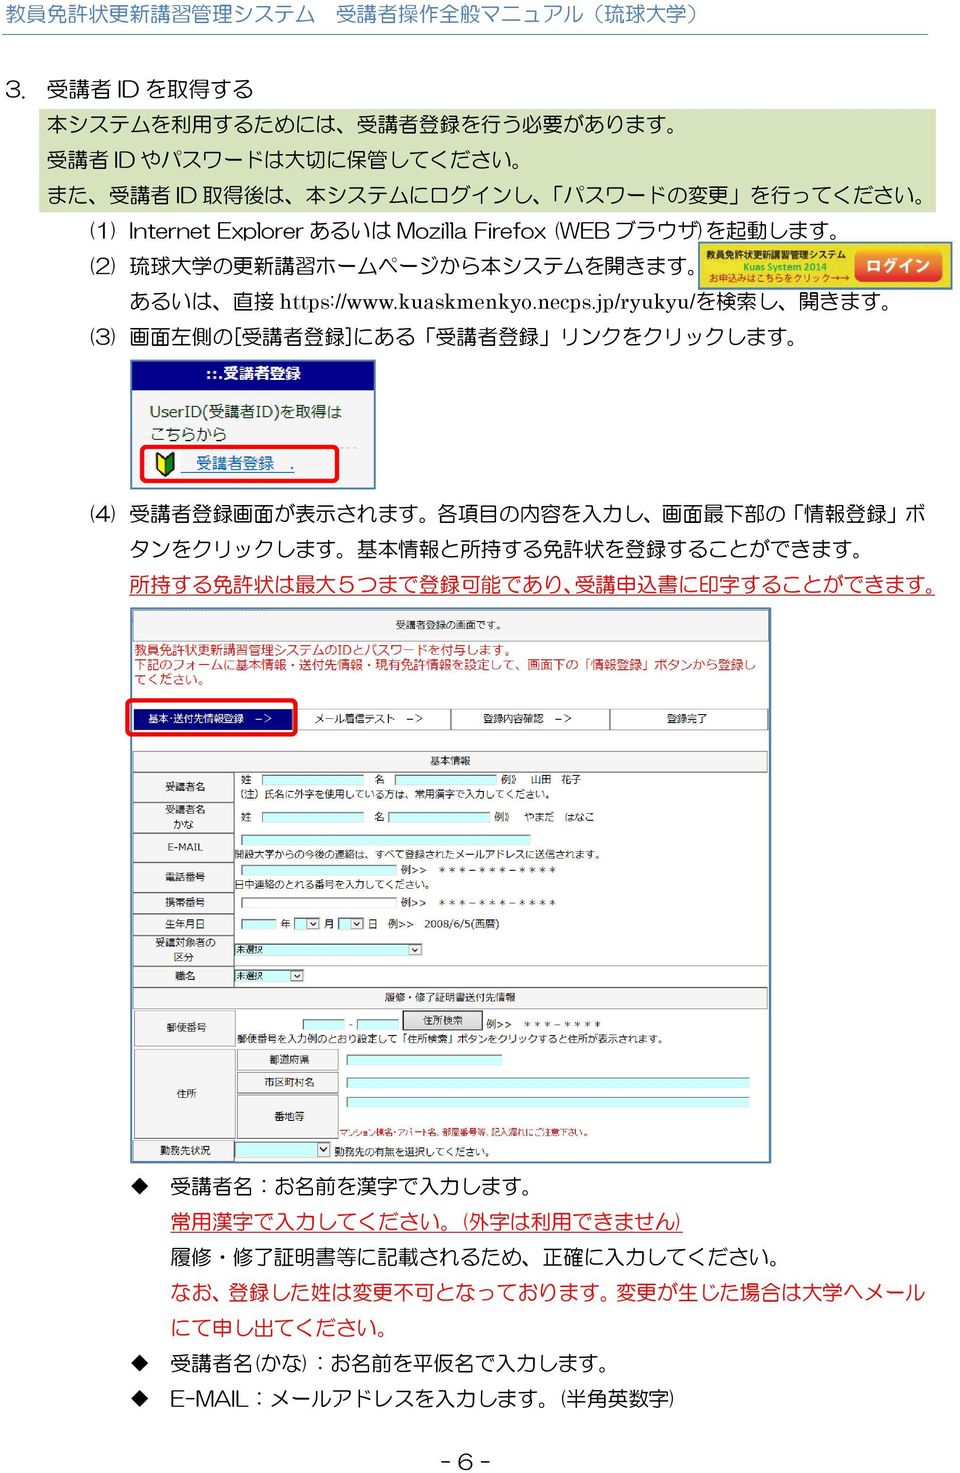 jp/ryukyu/を 検 索 し 開 きます (3) 画 面 左 側 の[ 受 講 者 登 録 ]にある 受 講 者 登 録 リンクをクリックします (4) 受 講 者 登 録 画 面 が 表 示 されます 各 項 目 の 内 容 を 入 力 し 画 面 最 下 部 の 情 報 登 録 ボ タンをクリックします 基 本 情 報 と 所 持 する 免 許 状 を 登 録 することができます 所